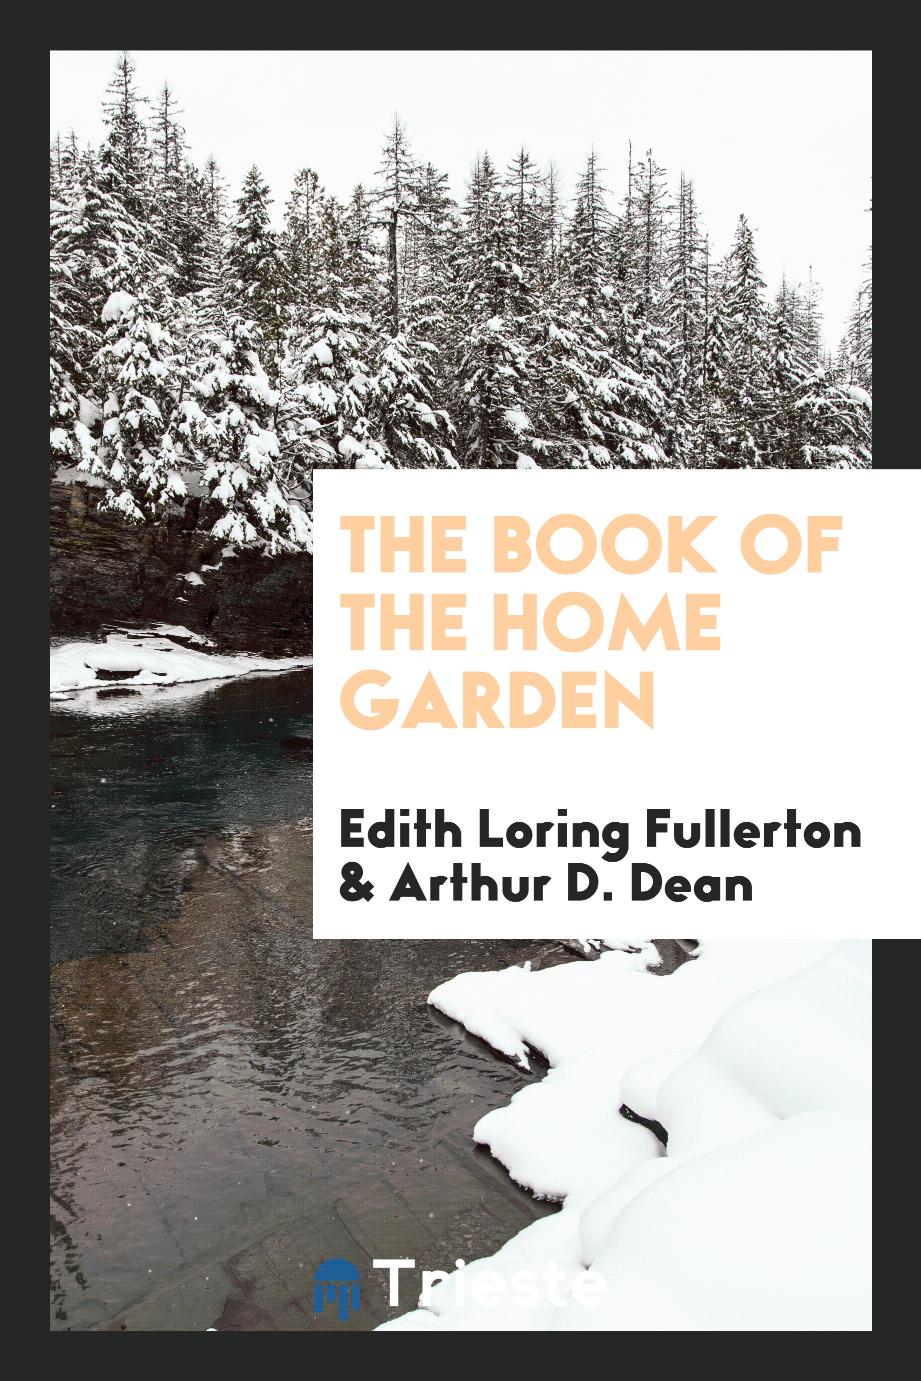 The book of the home garden